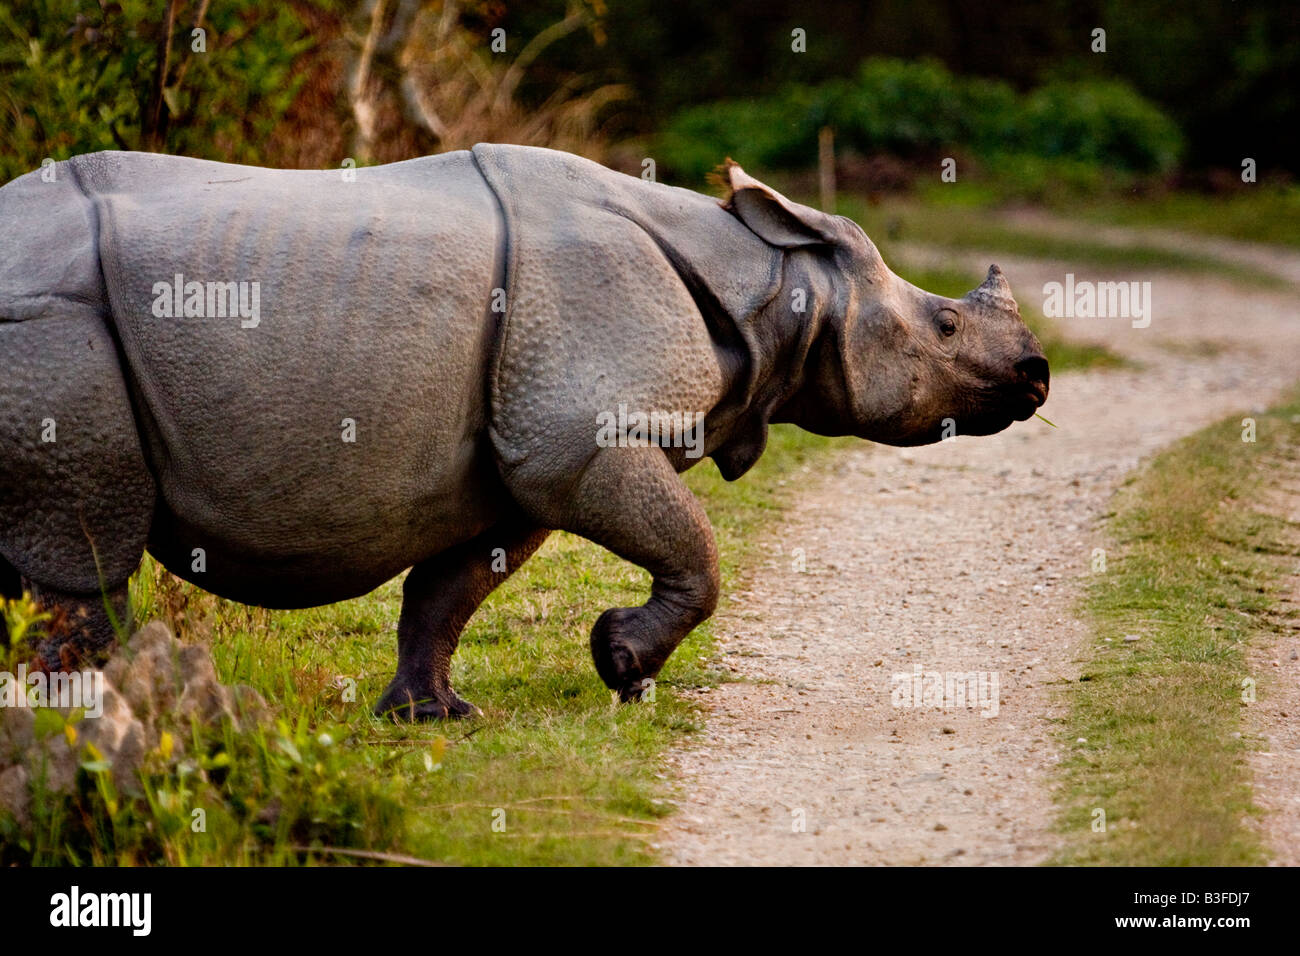 Une asiatique longicorne rhinocéros dans le parc national de Kaziranga dans le nord-est de l'état indien de l'Assam traversant une route forestière Banque D'Images